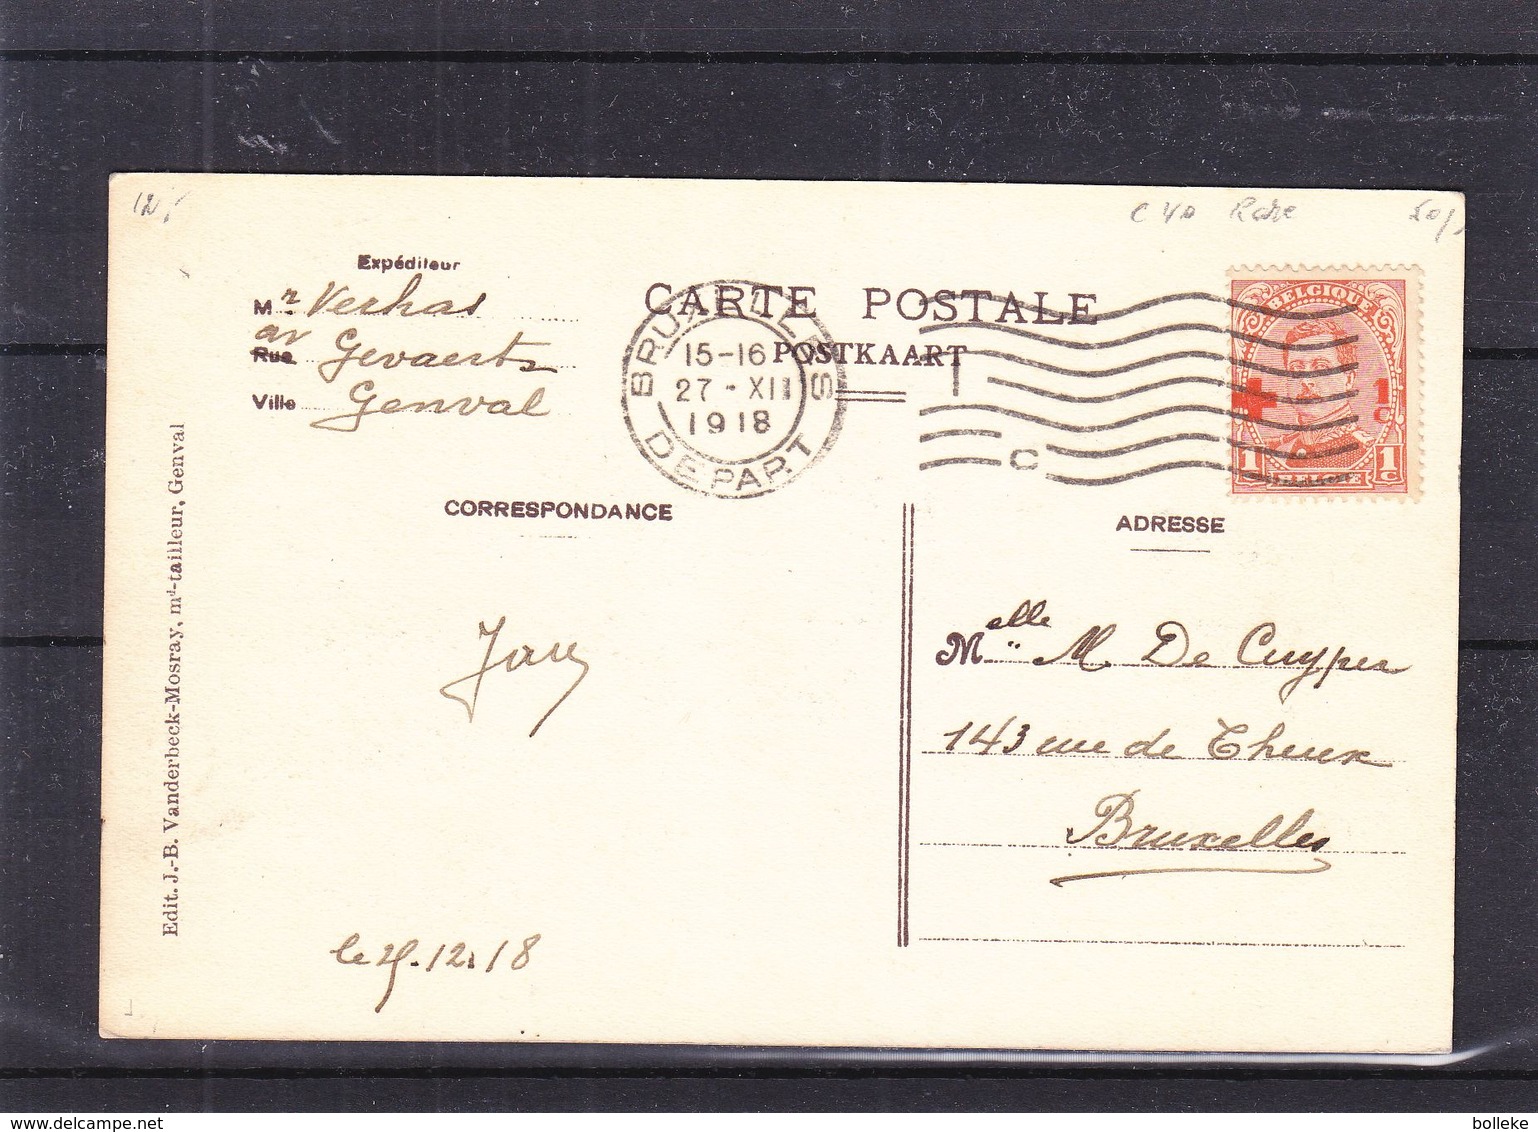 Croix Rouge - Belgique - Carte Postale De 1918 - Oblit Bruxelles - Avec Le 1c - Rare - Valeur 40 Euros - 1918 Red Cross